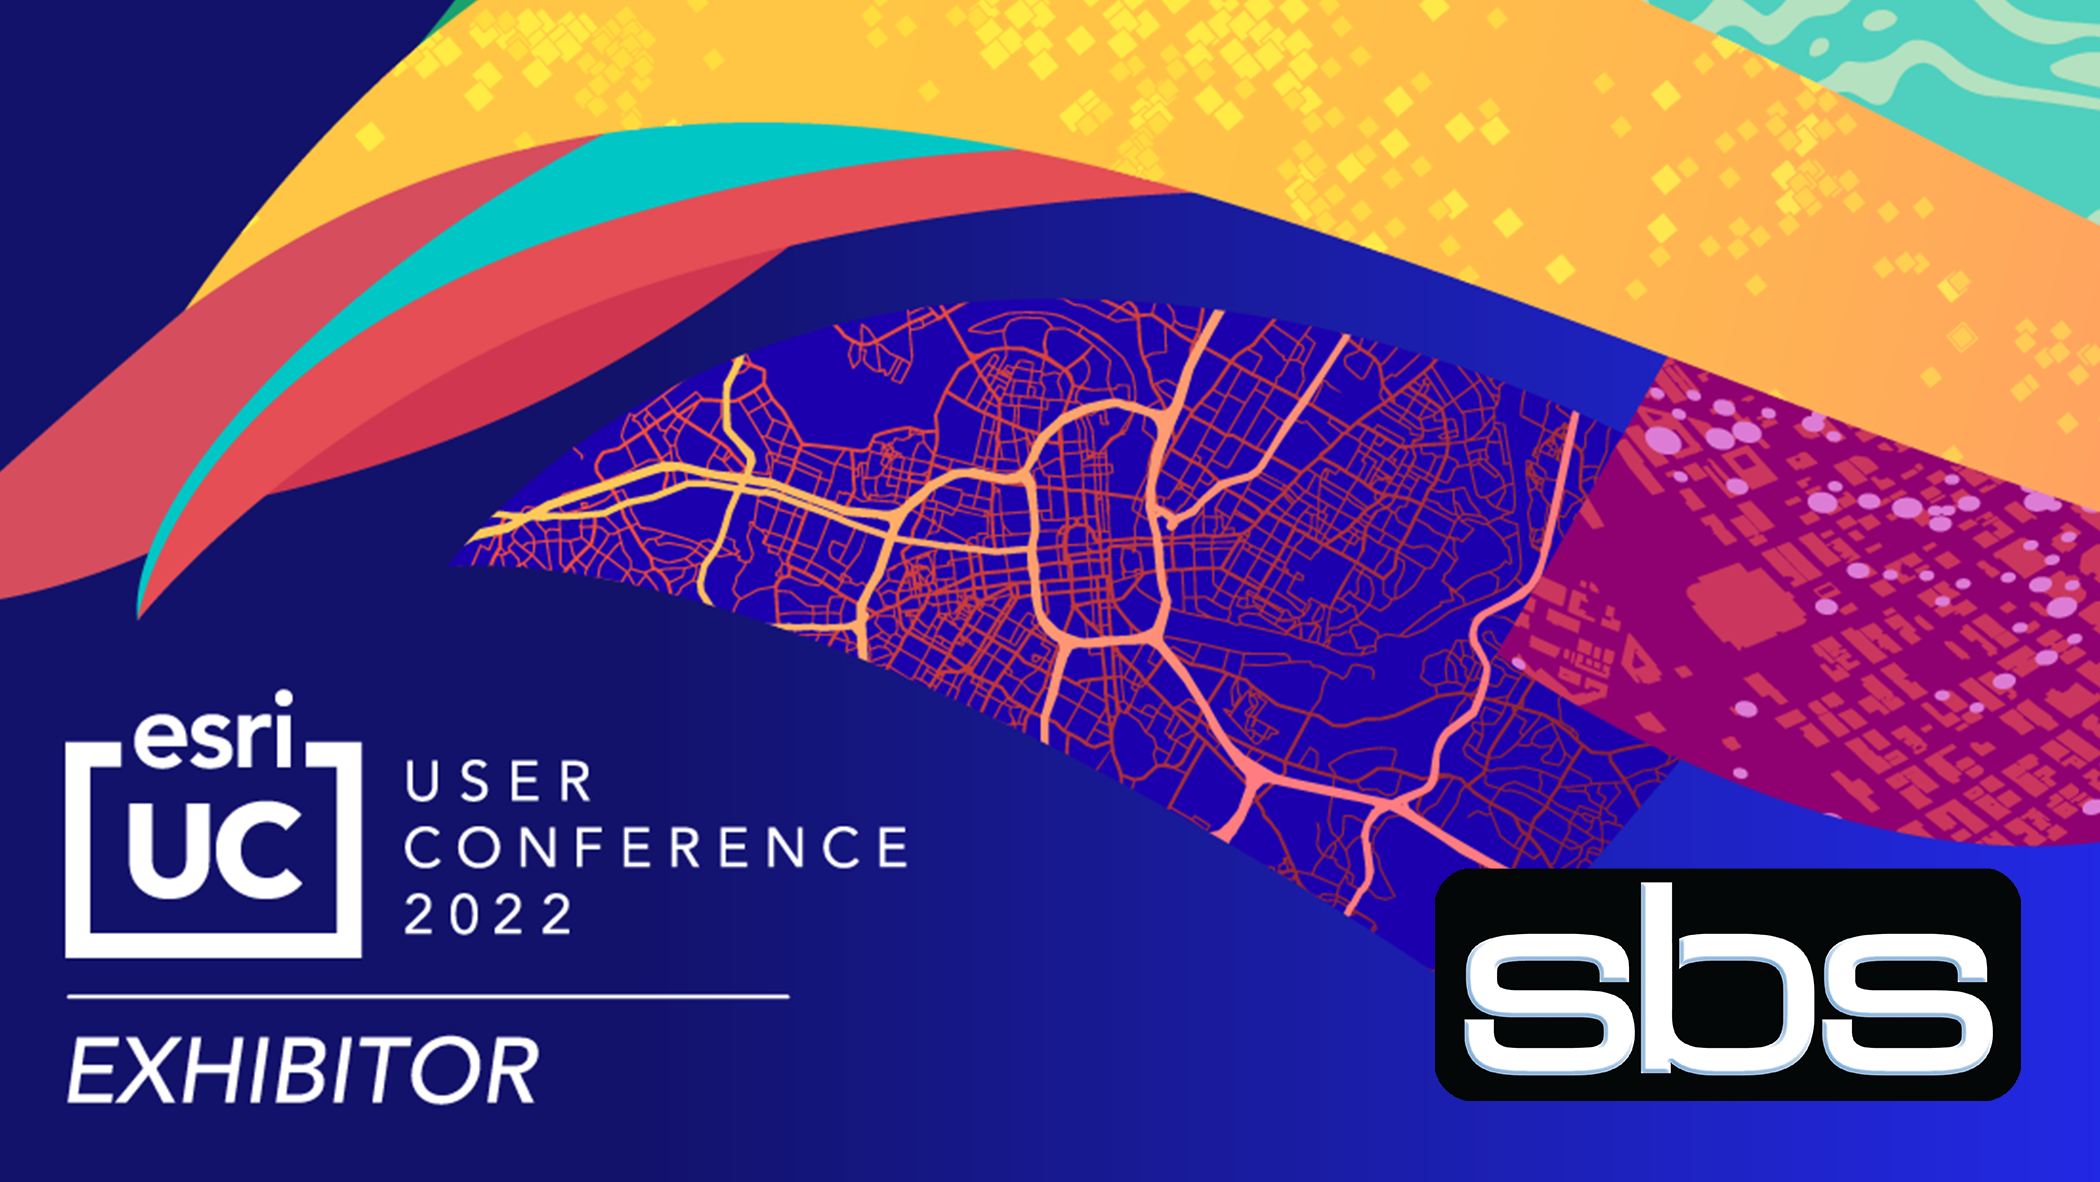 Esri User Conference 2022